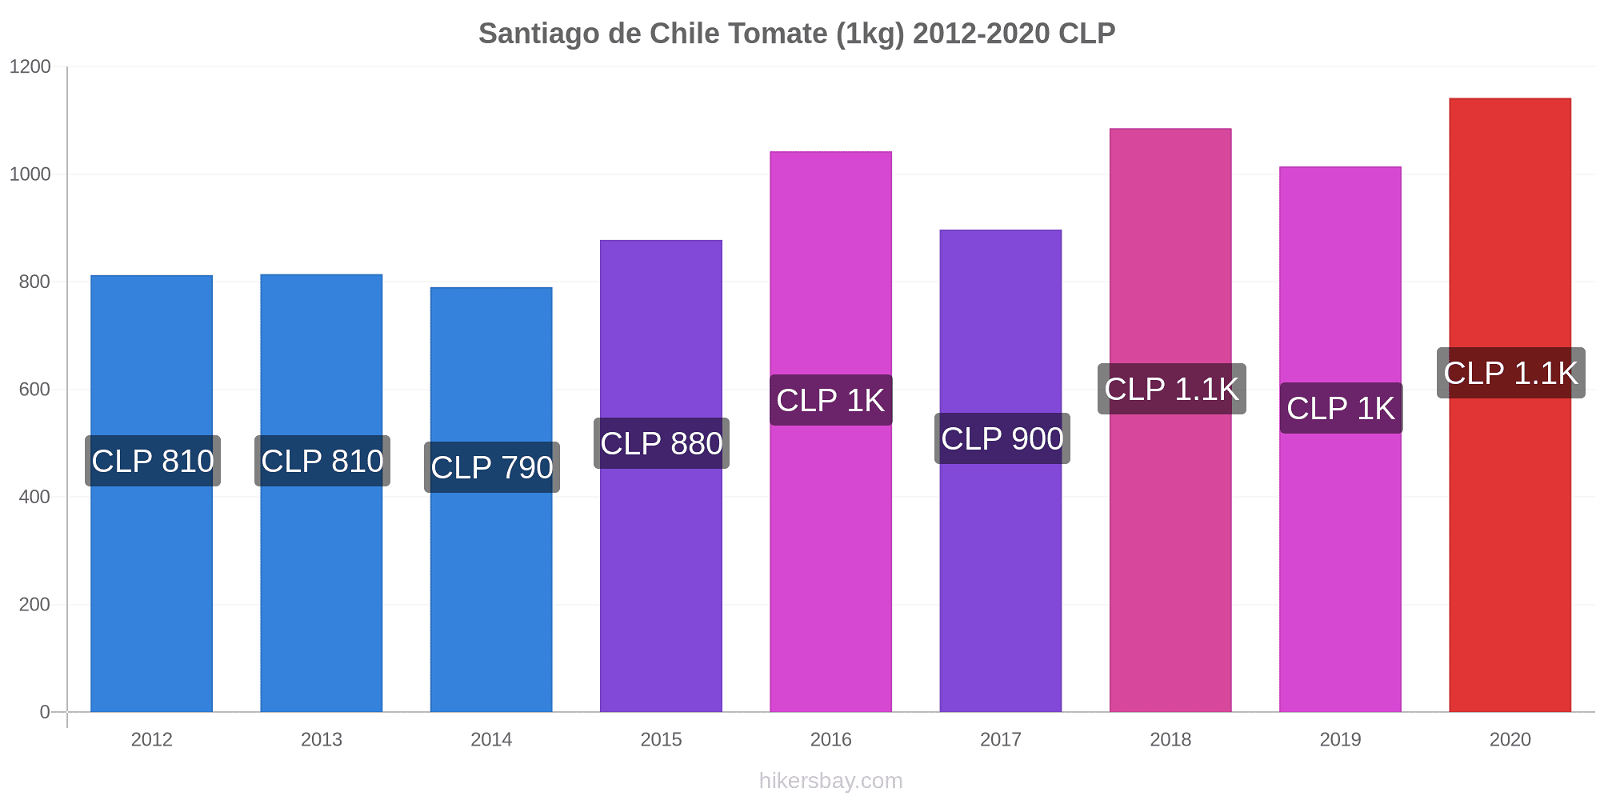 Santiago de Chile cambios de precios Tomate (1kg) hikersbay.com